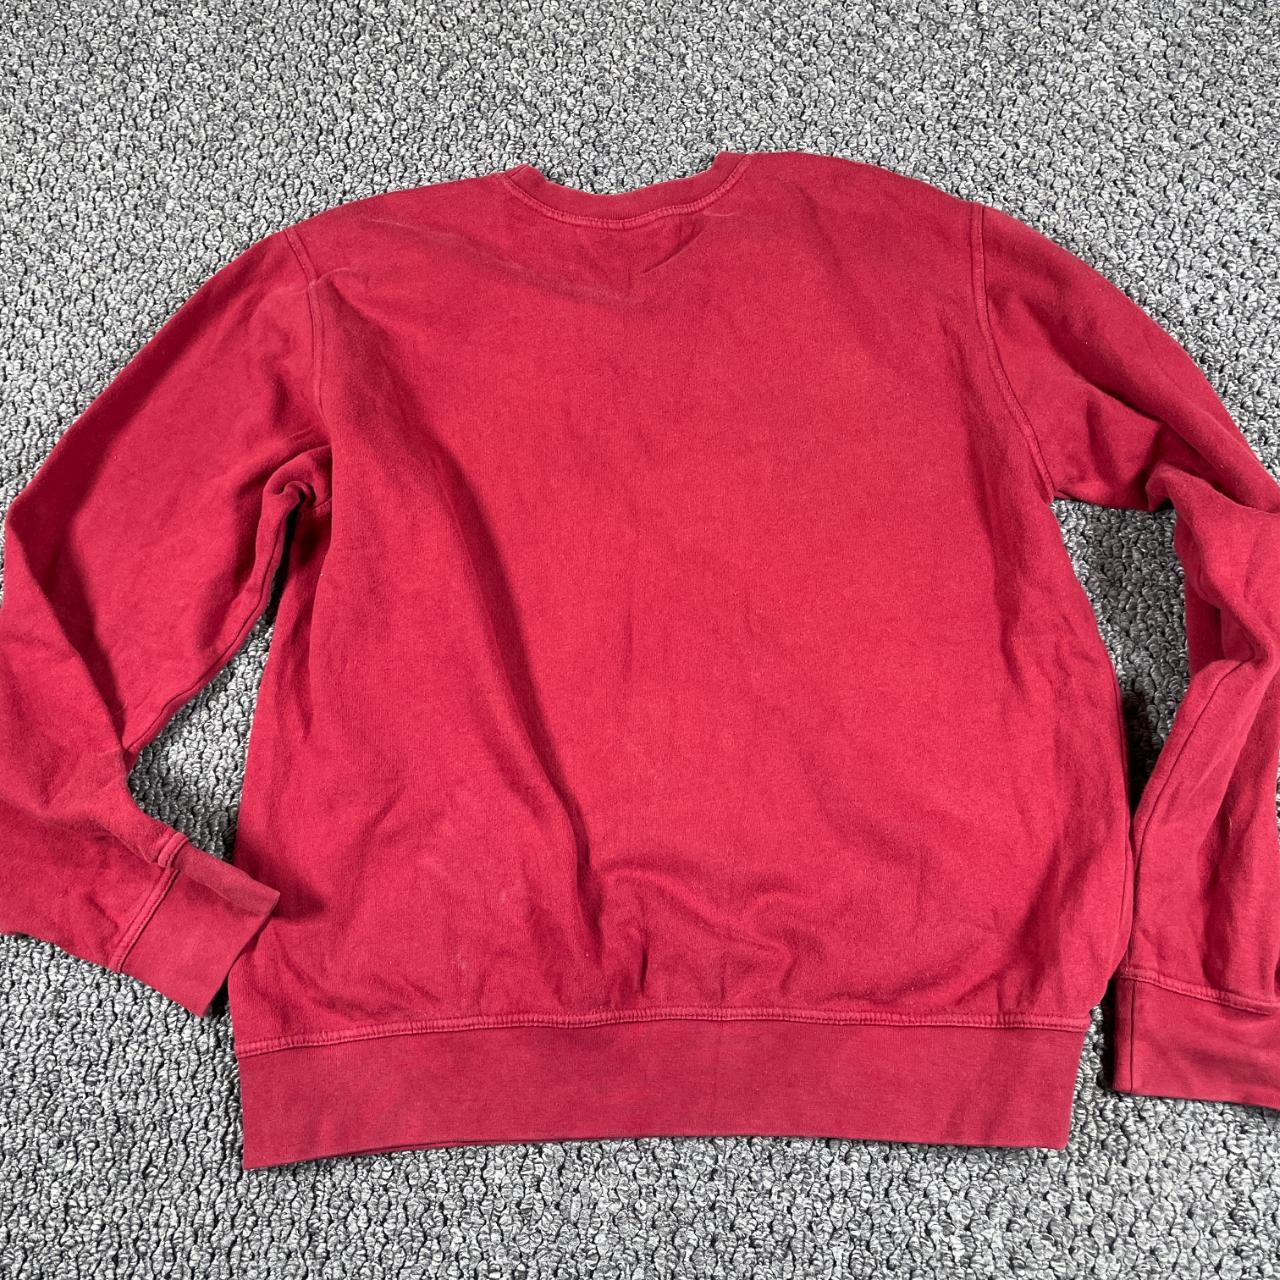 Fossil Men's Red Sweatshirt (2)